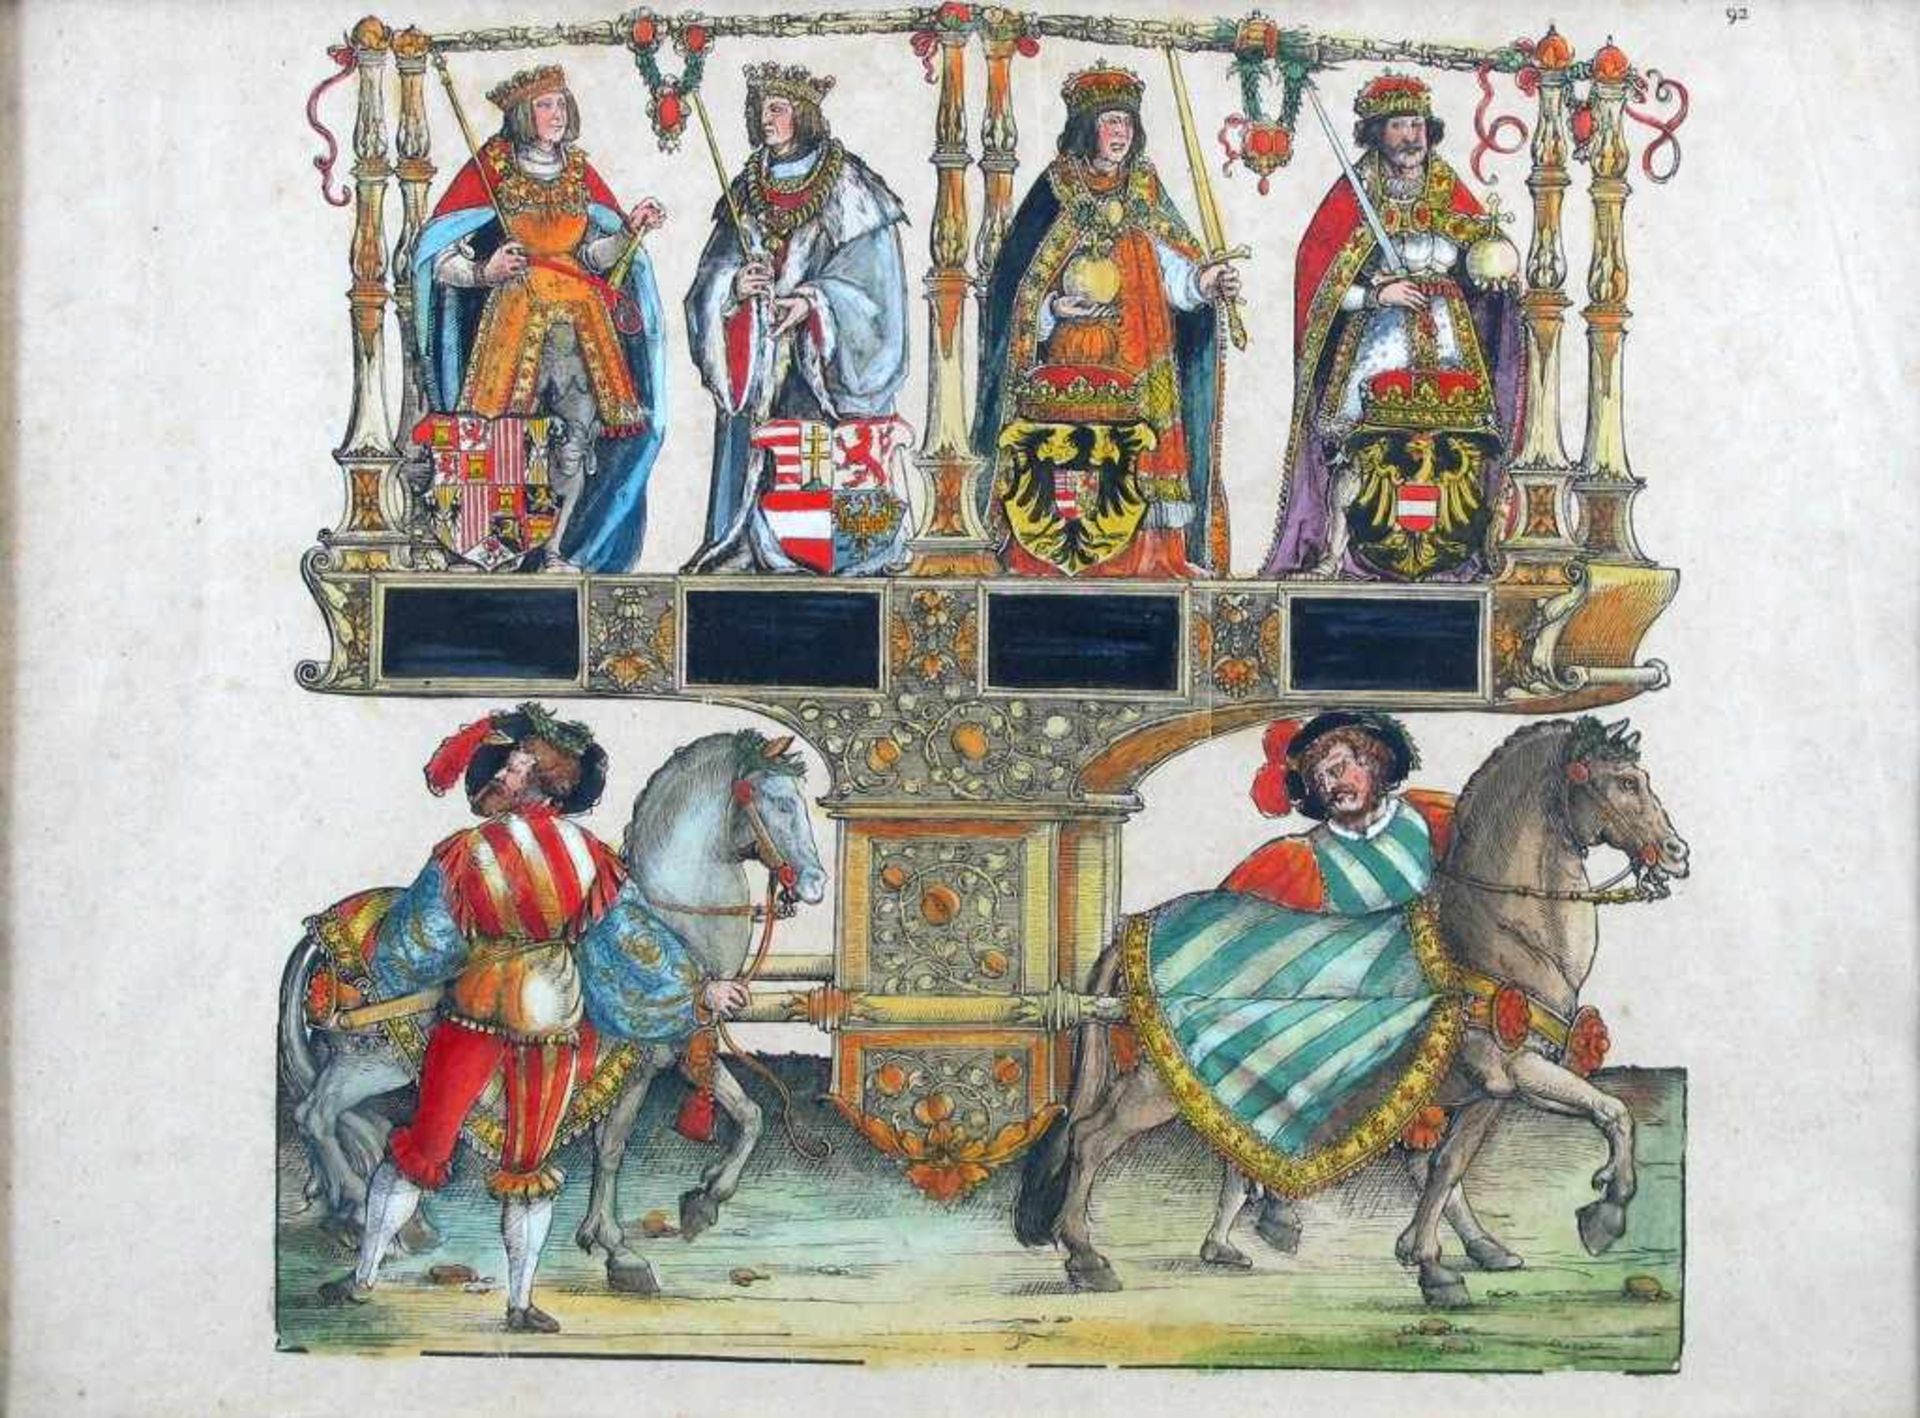 Herrscherdarstellungen mit zugehörigen Wappen, darunter Pferdeparade. Kol. Holzschnitt. Blattgr. ca.